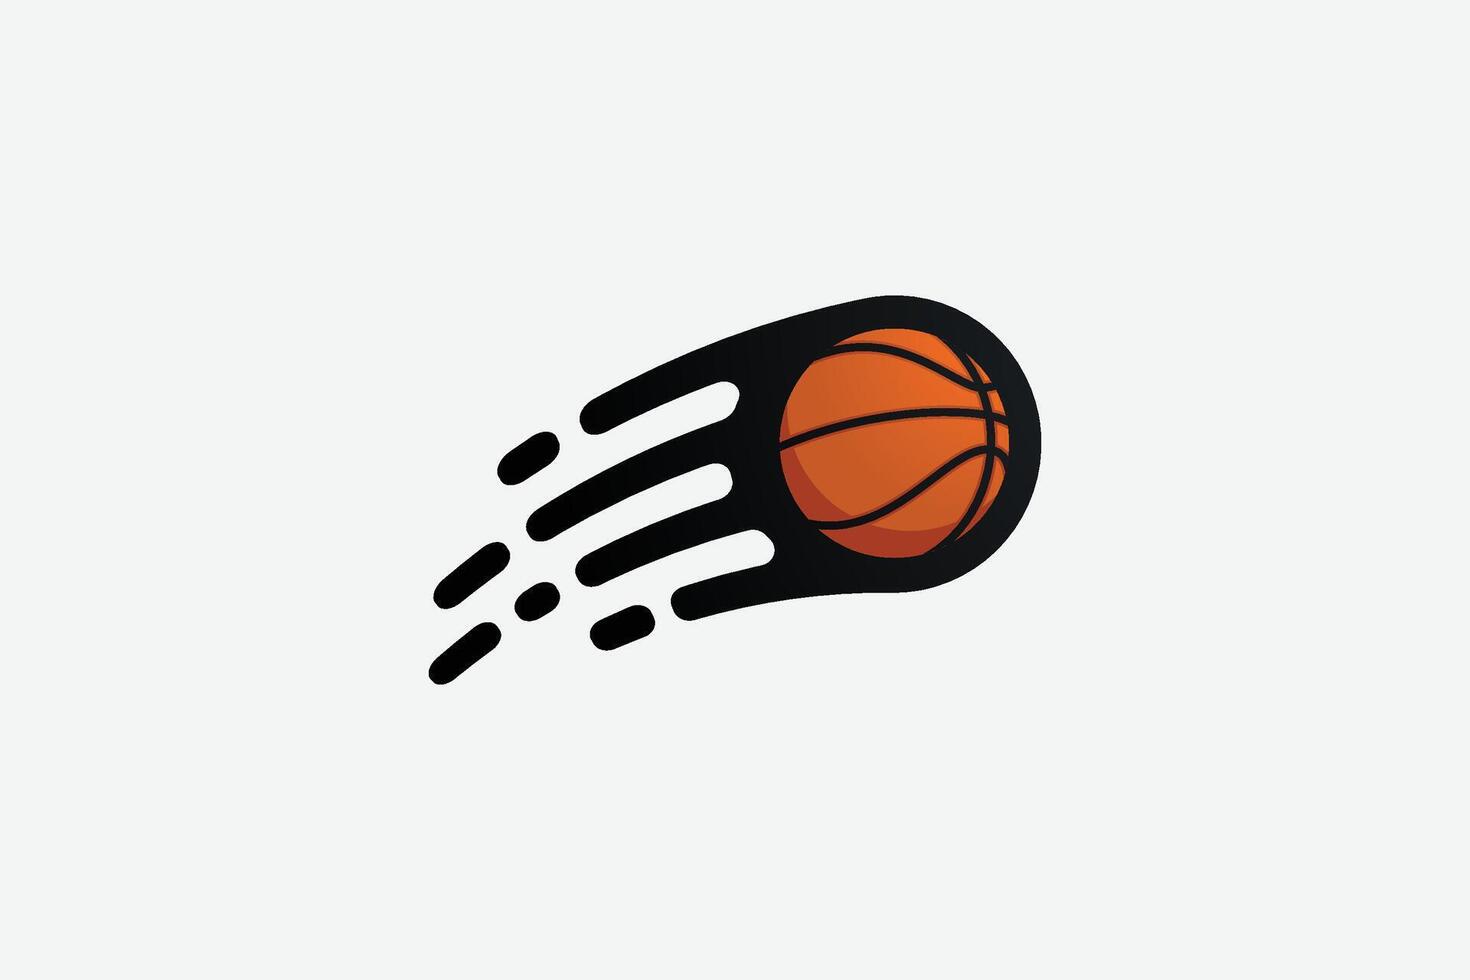 vôo basquetebol vetor gráfico com movimento efeito para basquetebol logotipo, adesivo, t camisa, etc.